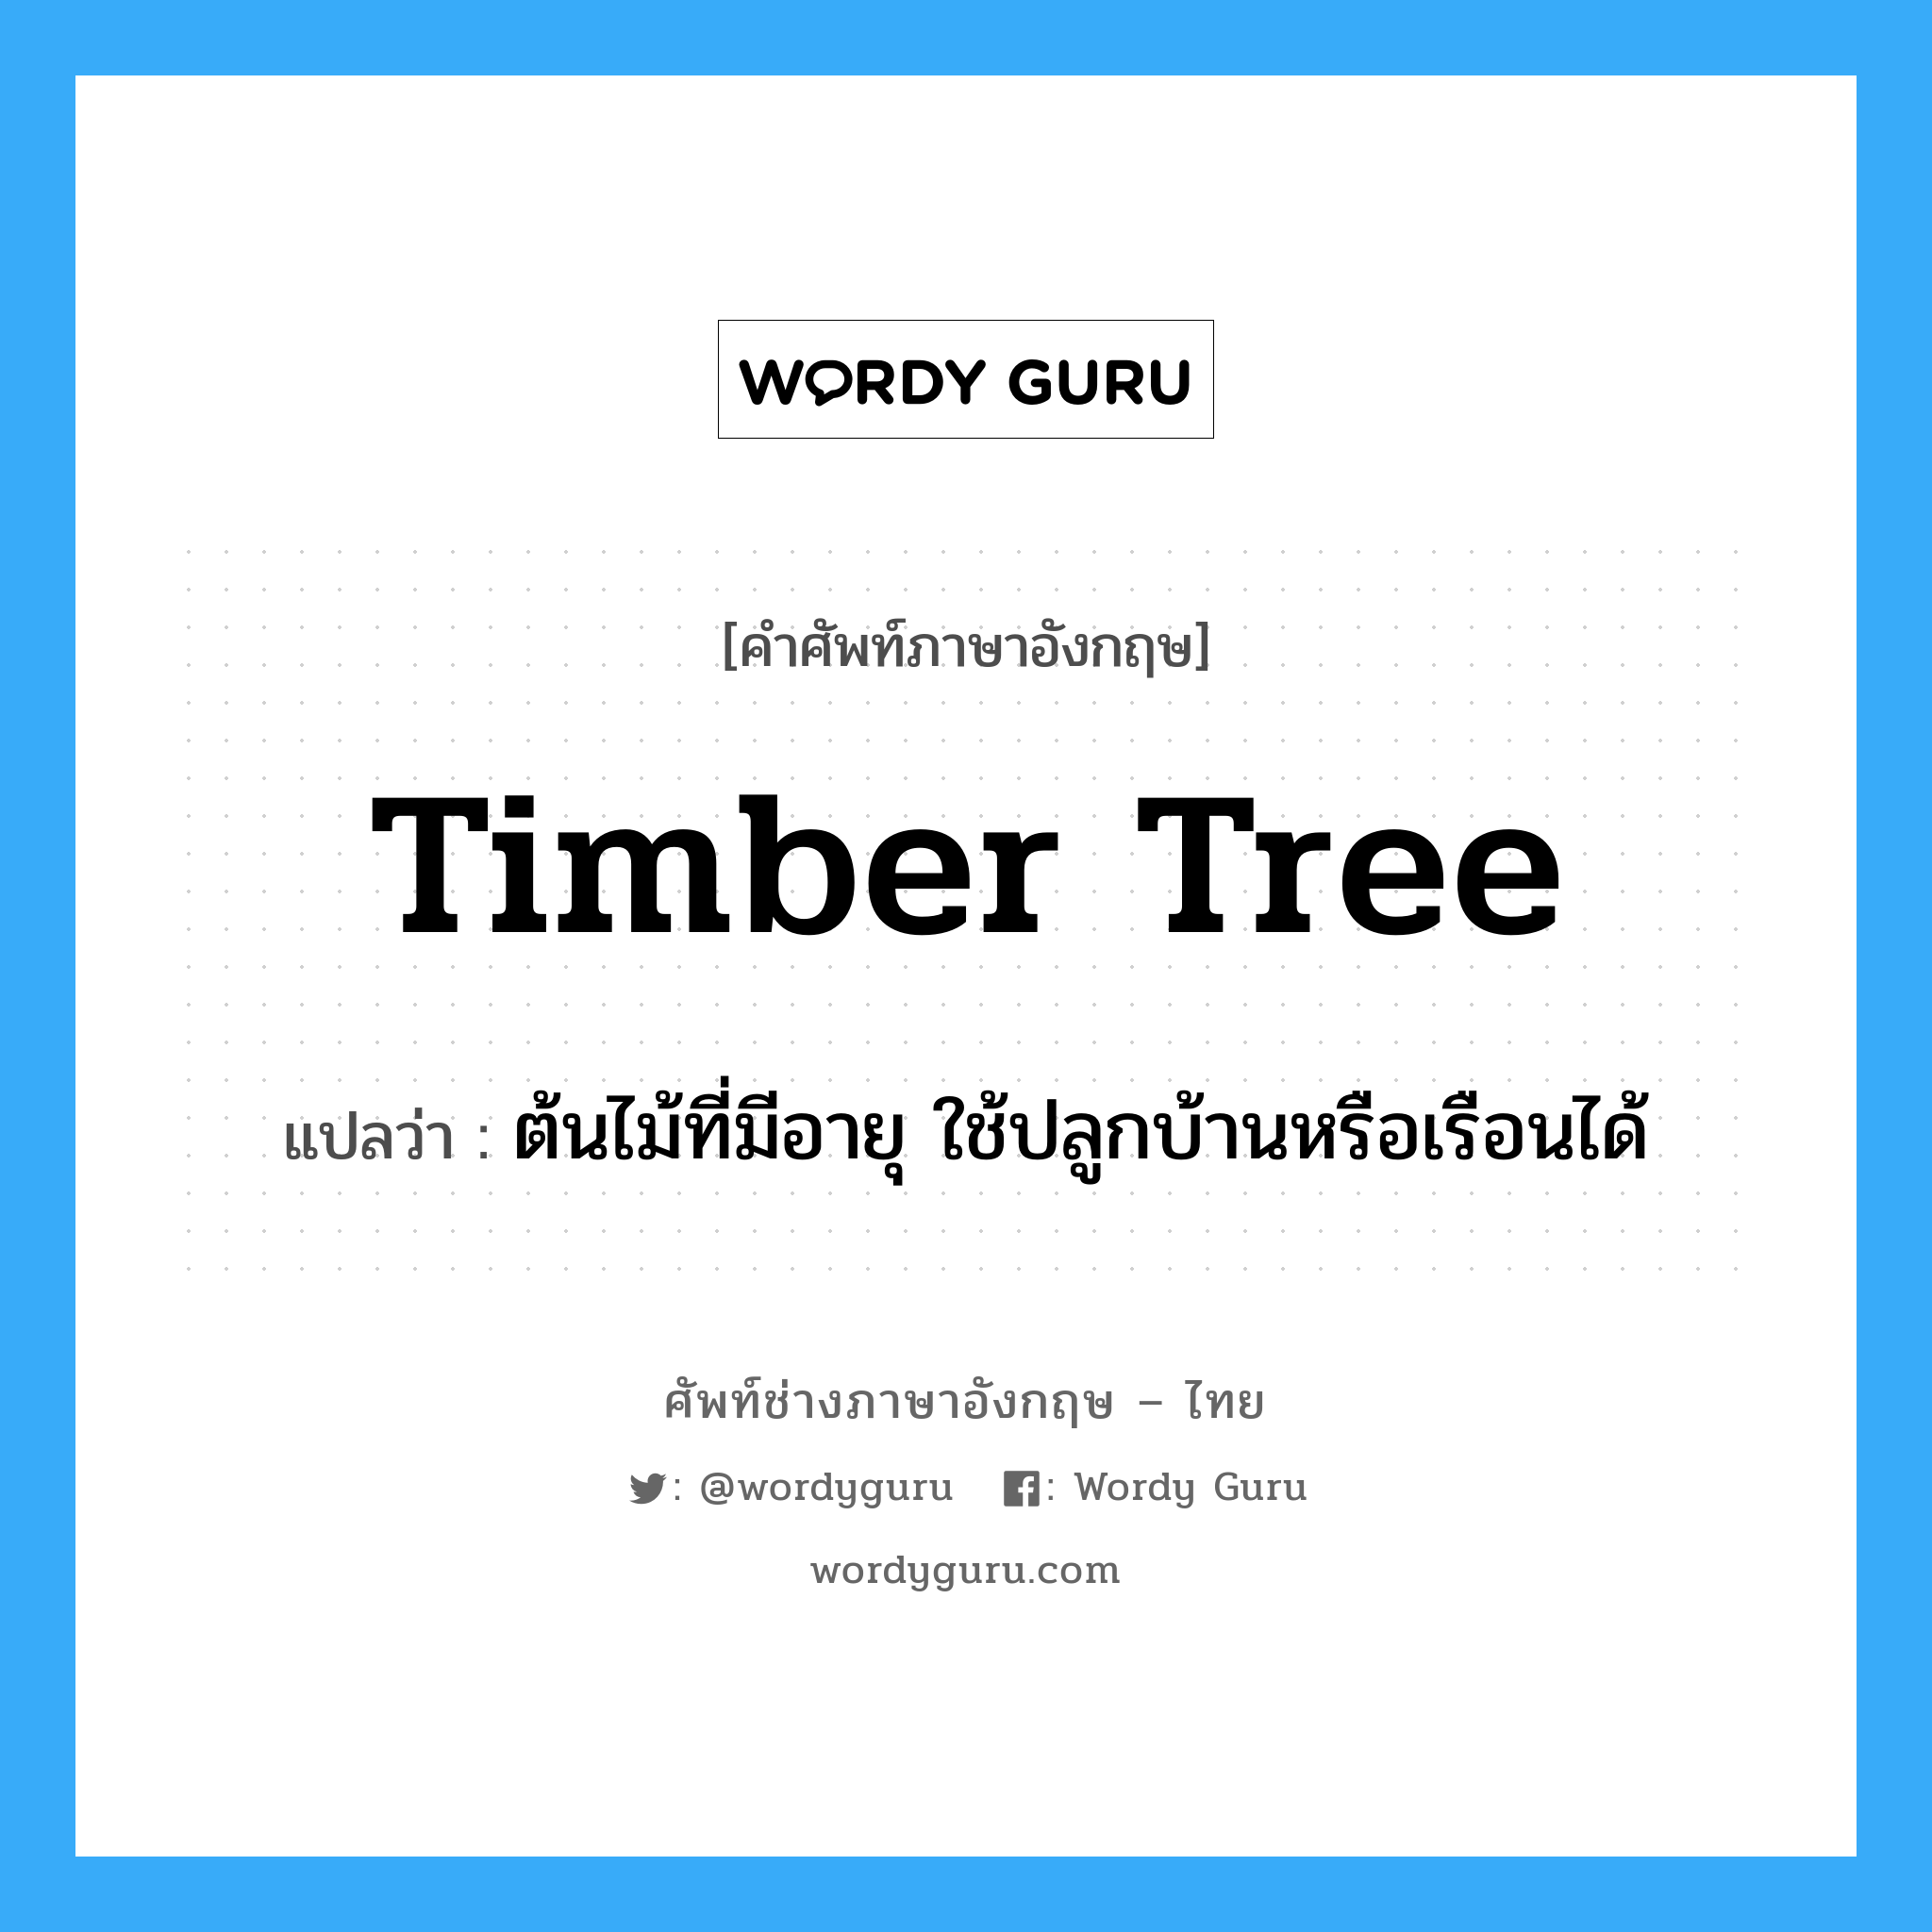 ต้นไม้ที่มีอายุ ใช้ปลูกบ้านหรือเรือนได้ ภาษาอังกฤษ?, คำศัพท์ช่างภาษาอังกฤษ - ไทย ต้นไม้ที่มีอายุ ใช้ปลูกบ้านหรือเรือนได้ คำศัพท์ภาษาอังกฤษ ต้นไม้ที่มีอายุ ใช้ปลูกบ้านหรือเรือนได้ แปลว่า timber tree